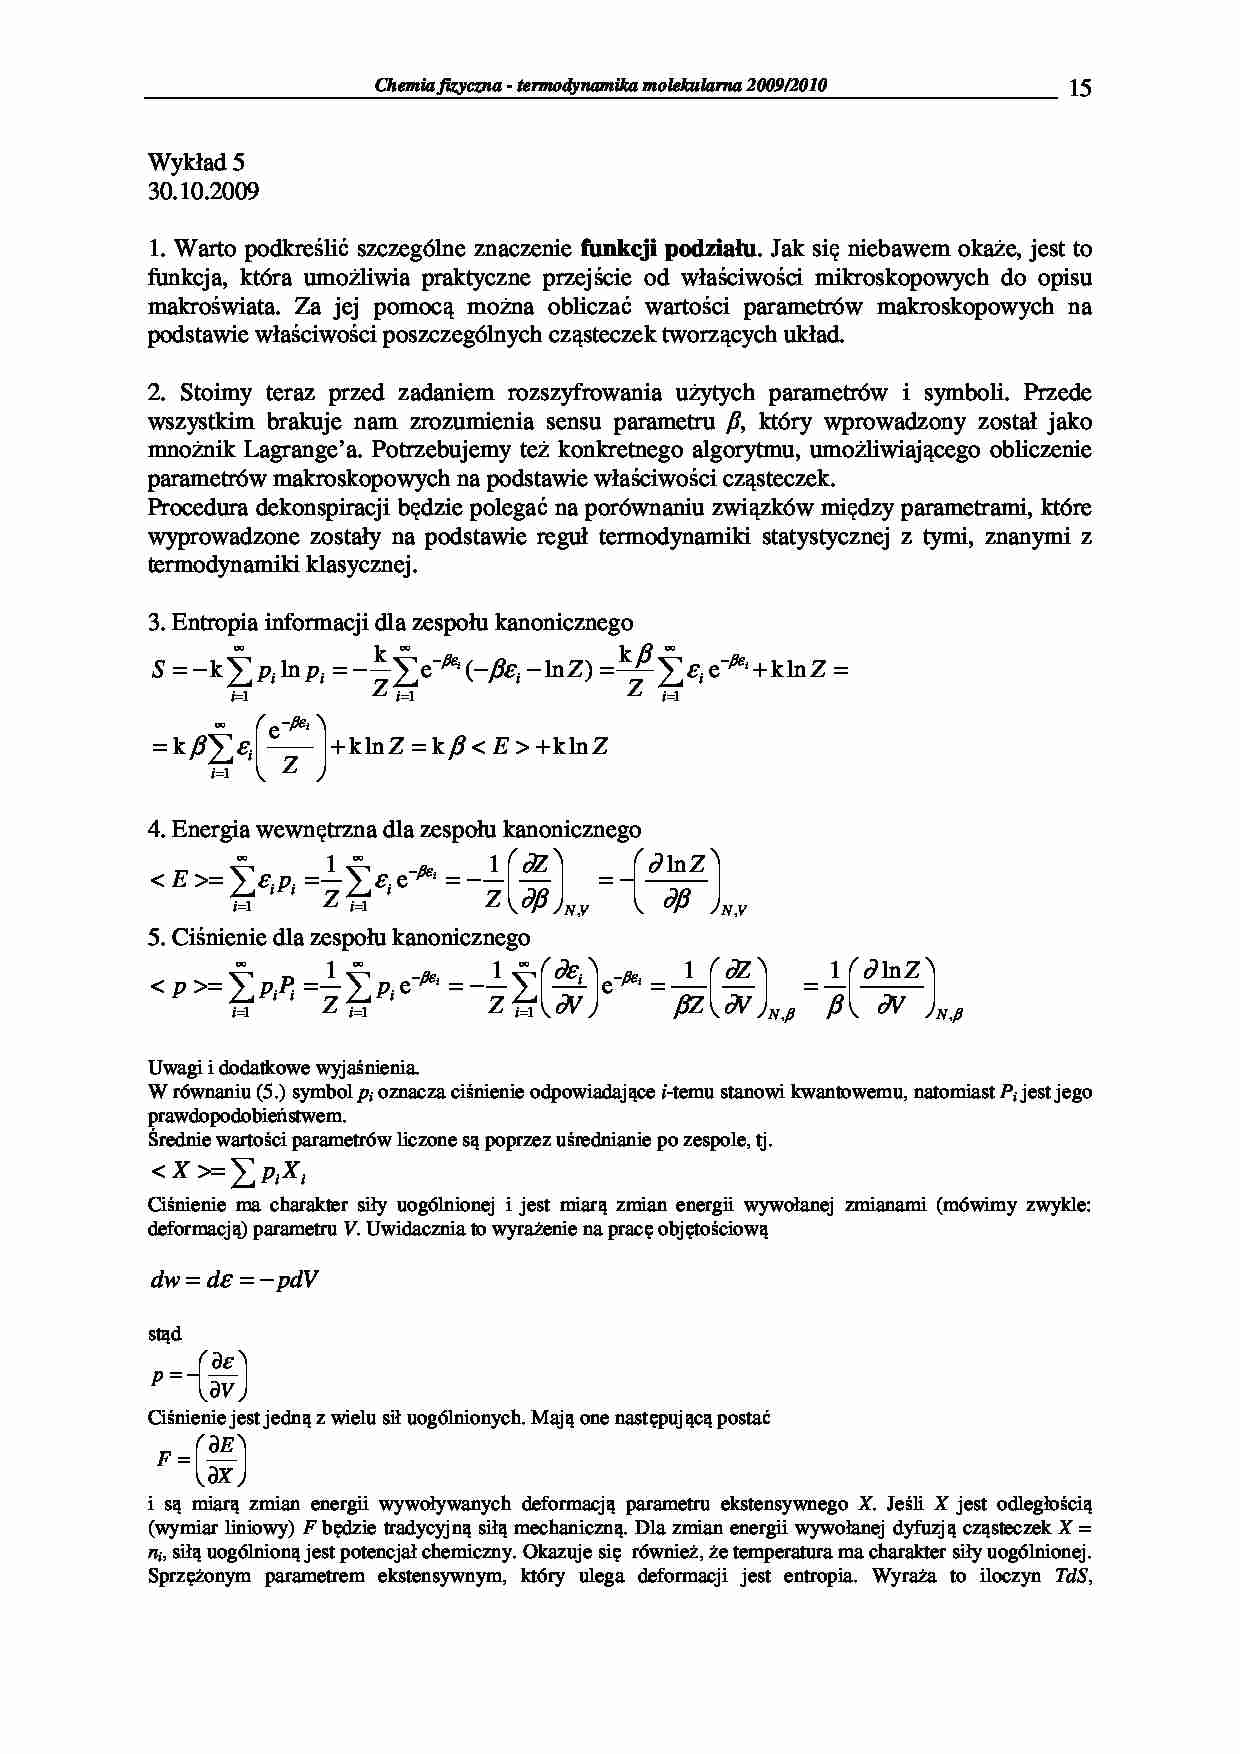 Chemia fizyczna - termodynamika molekularna 2009/2010-wykłady9 - strona 1